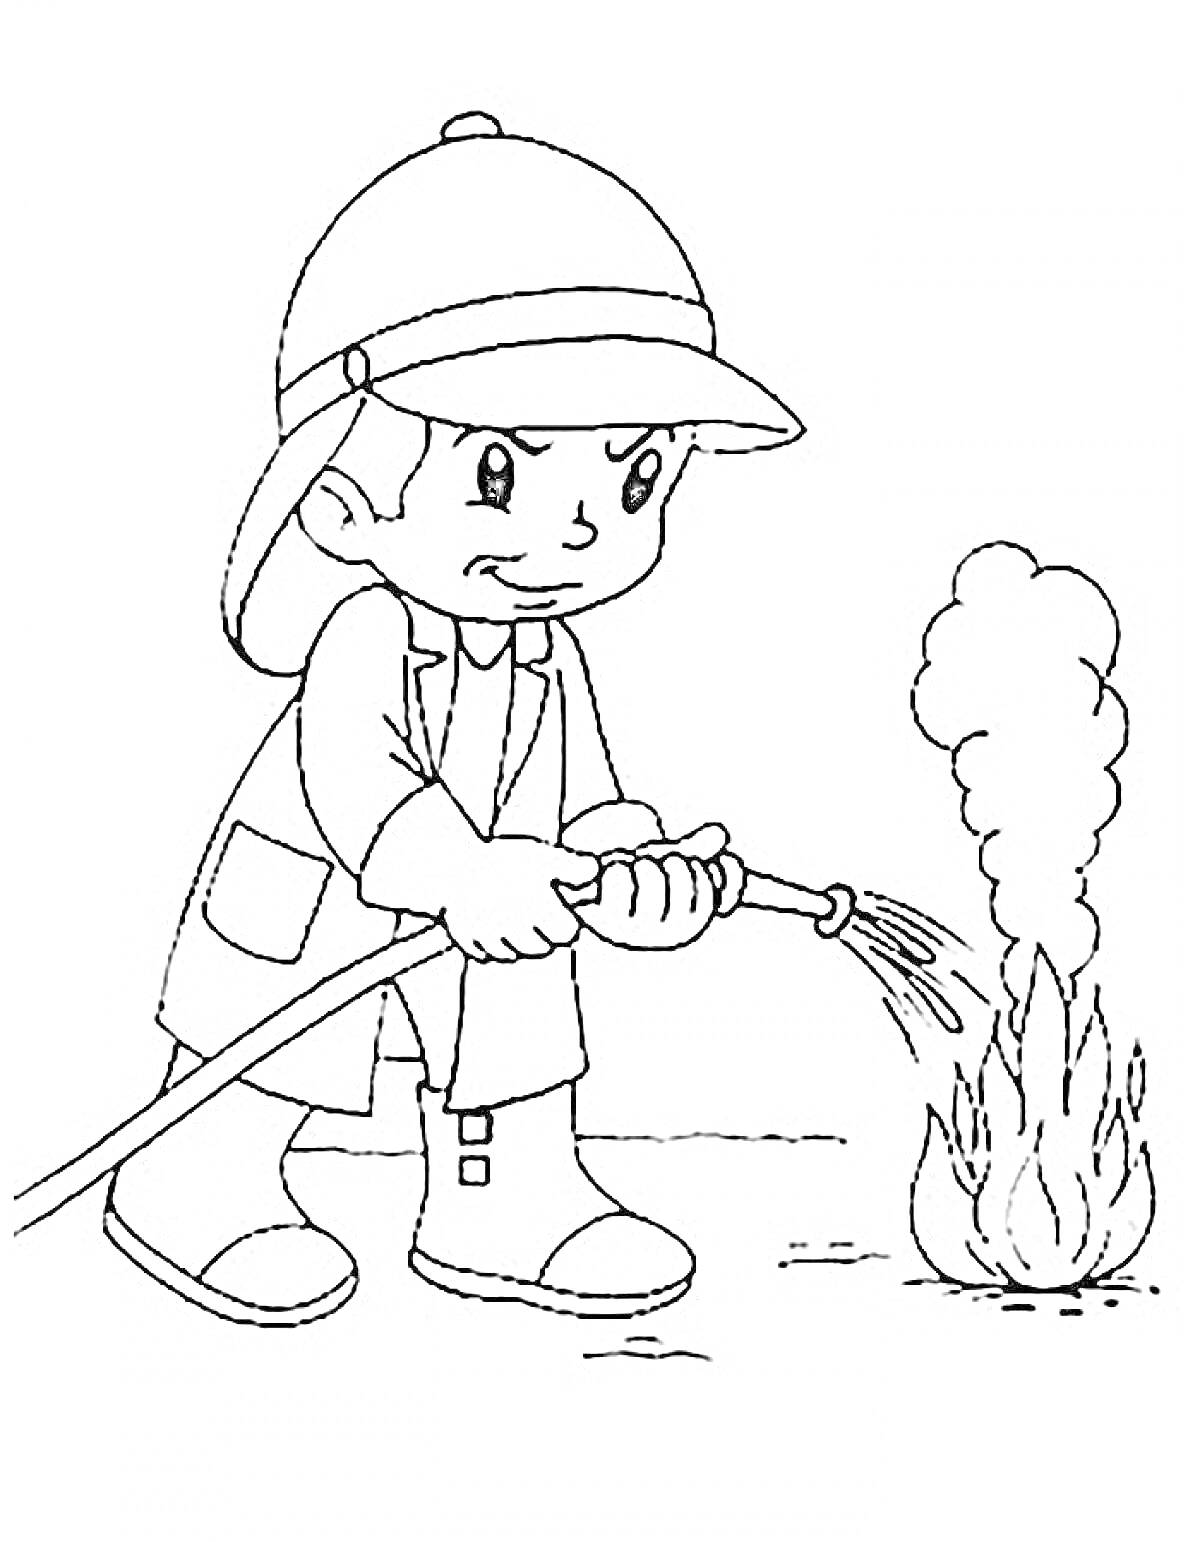 Ребенок-огнеборец тушит огонь с помощью шланга